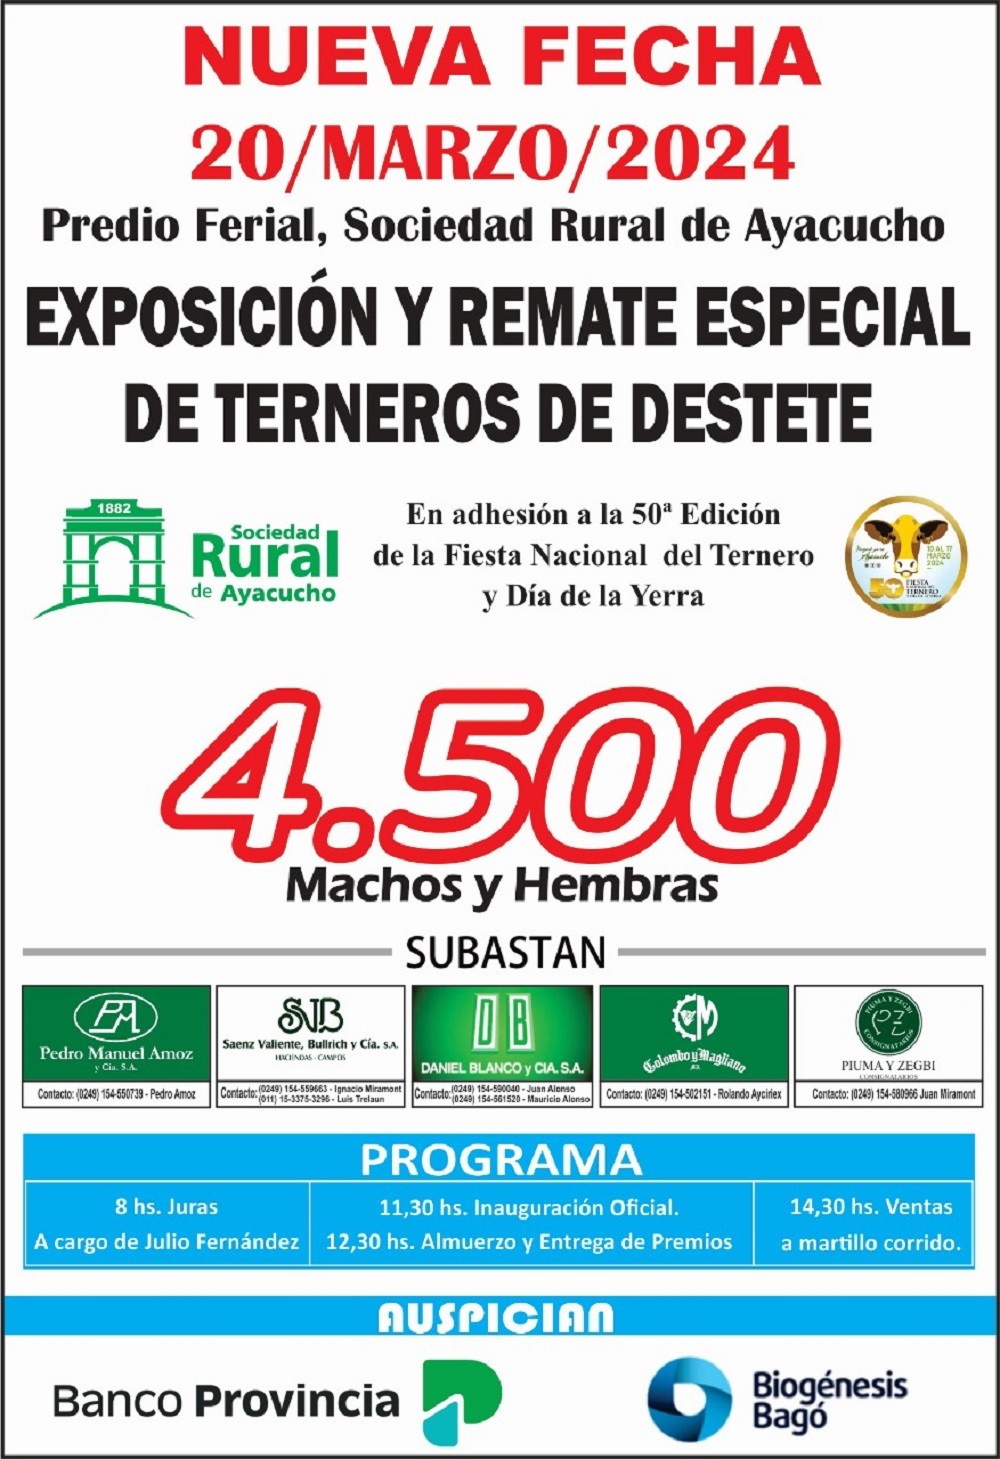 Remate Especial de Terneros de Destete en Ayacucho